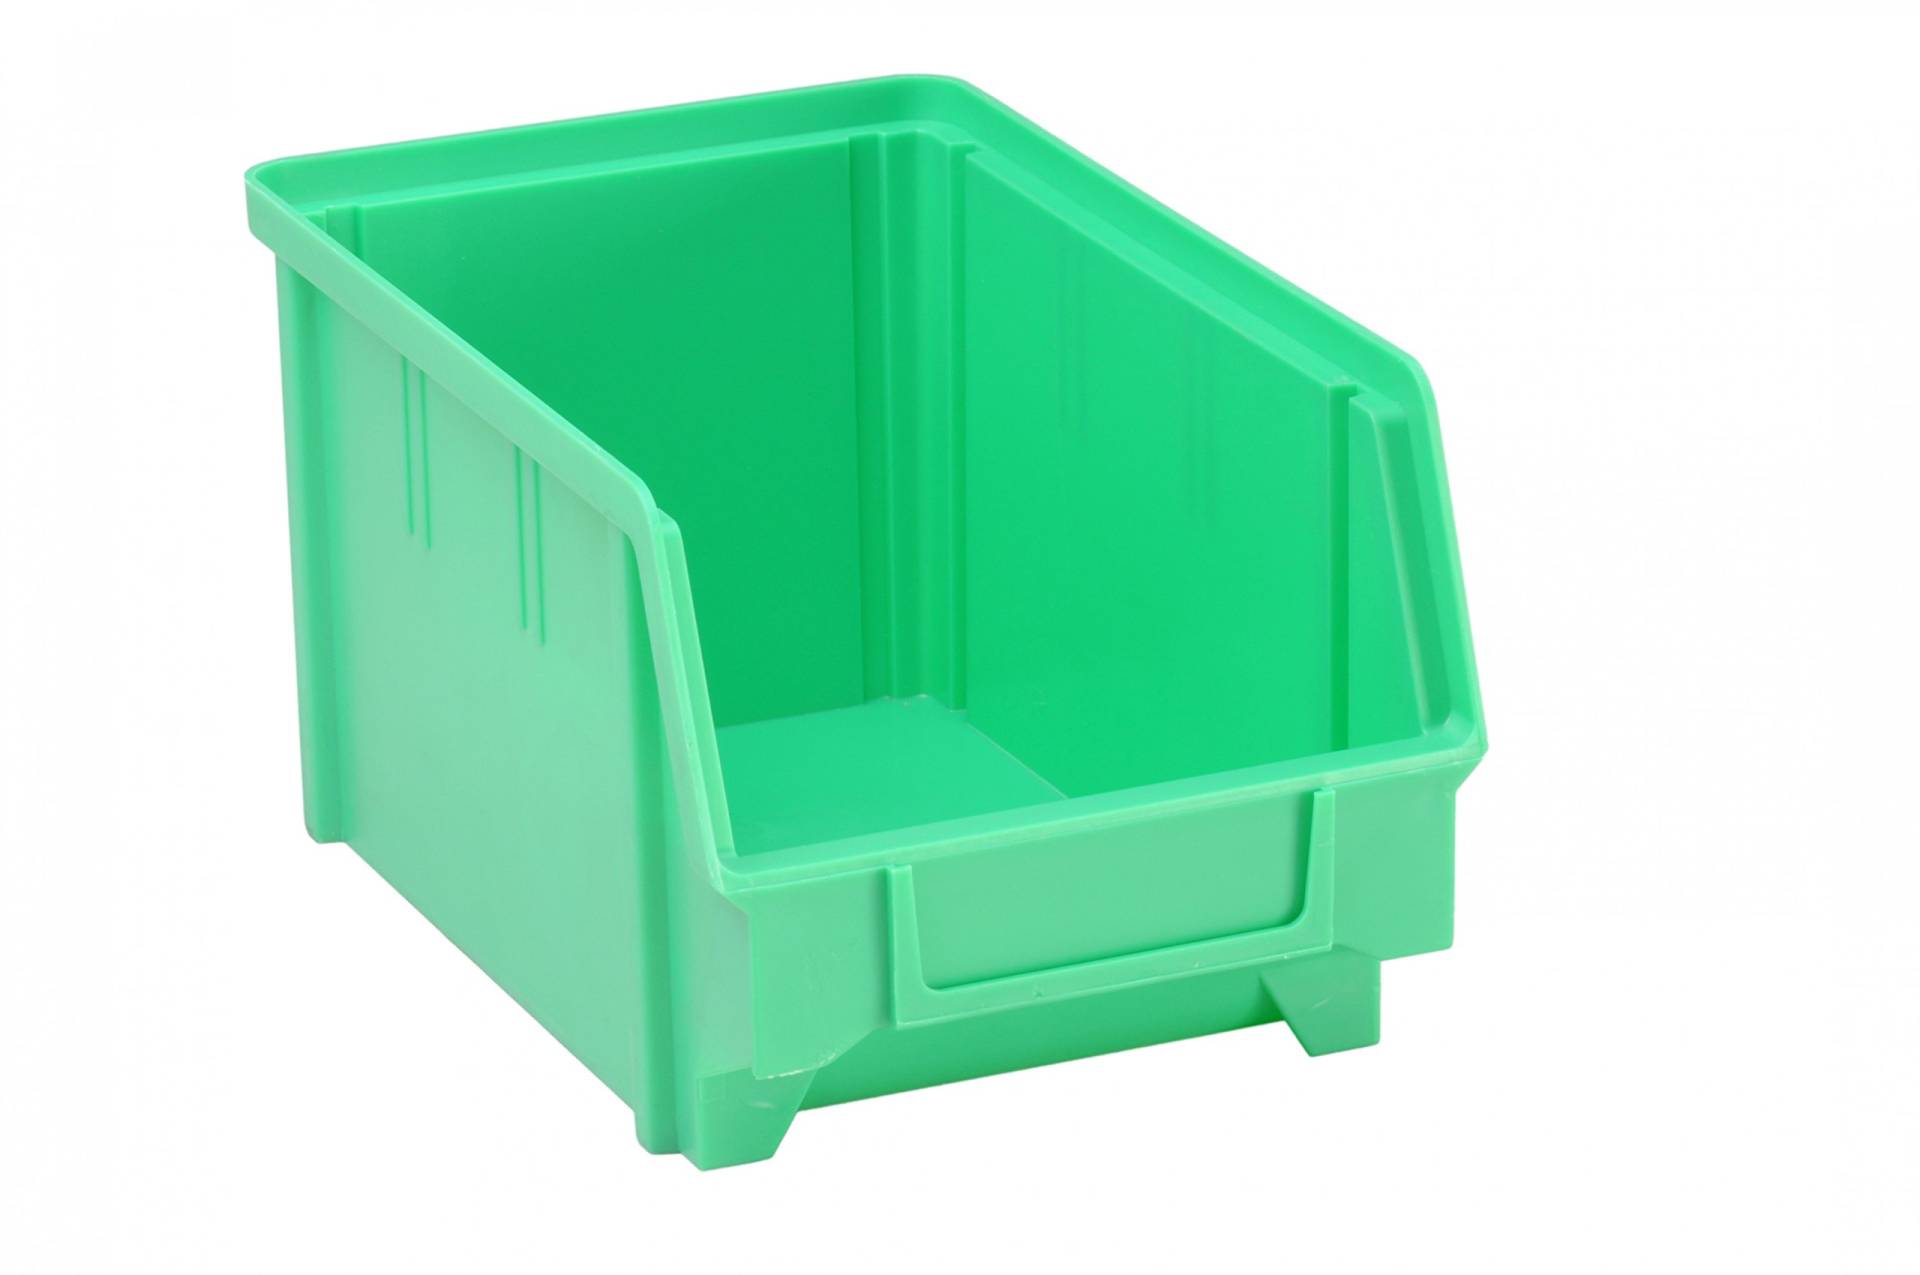 hünersdorff Sichtbox / Stapelbox / Lagerbox in Größe 3, aus Polystyrol, hohe Formstabilität und Belastbarkeit, Farbe: Grün von hünersdorff